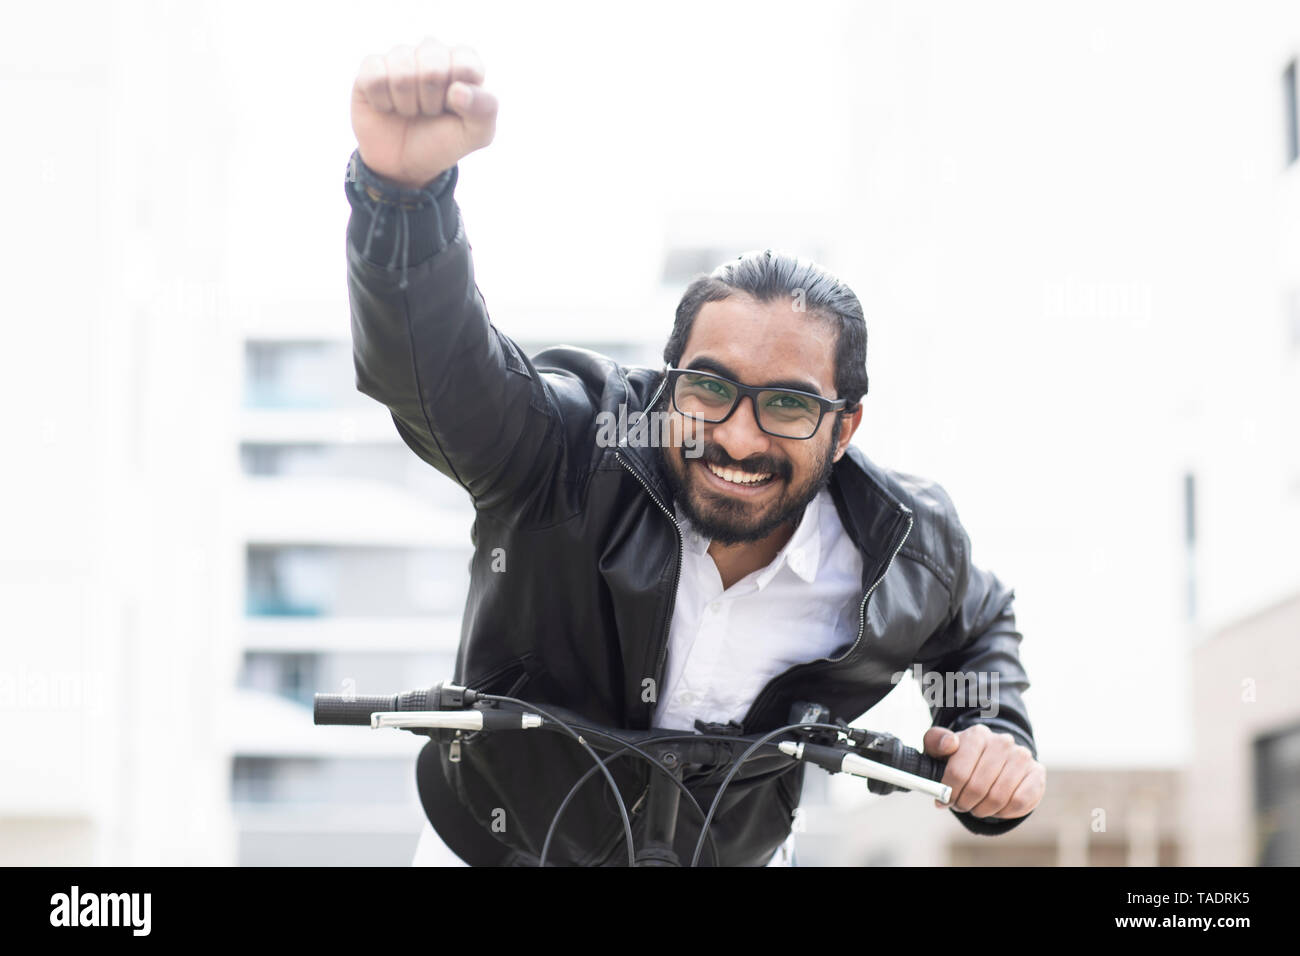 Portrait von glücklichen Mann mit Fahrrad Brillen und schwarze Lederjacke Stockfoto